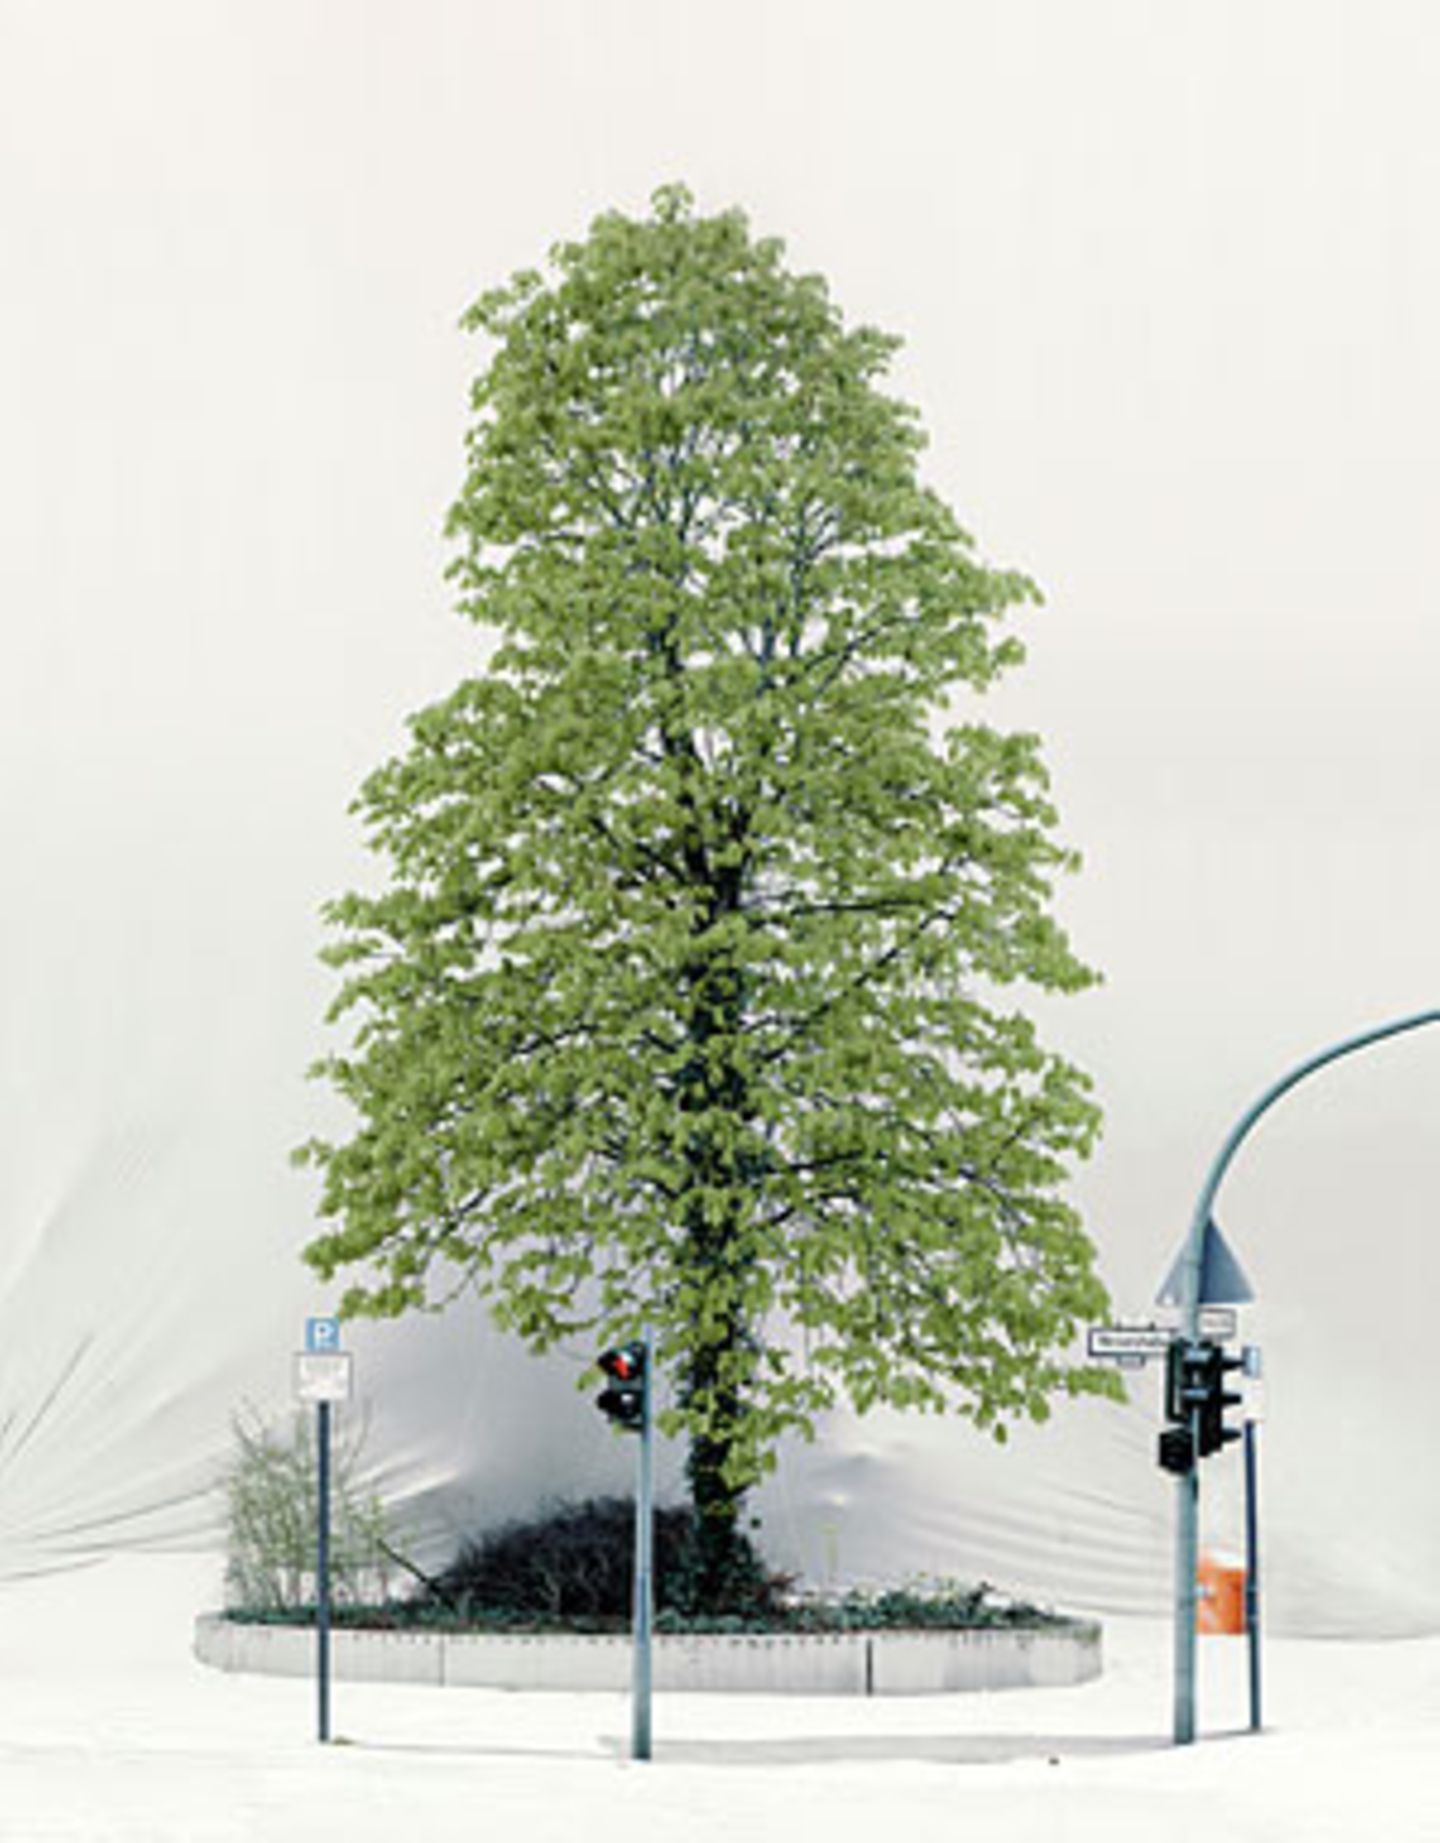 Florian Rexroth hat in Berlin die Umgebung mit Stoff verhüllt, um Bäume sichtbar zu machen. Der Vergleich mit Christo liegt nah. Der allerdings verhüllte den Reichstag, um ihn sichtbar zu machen.